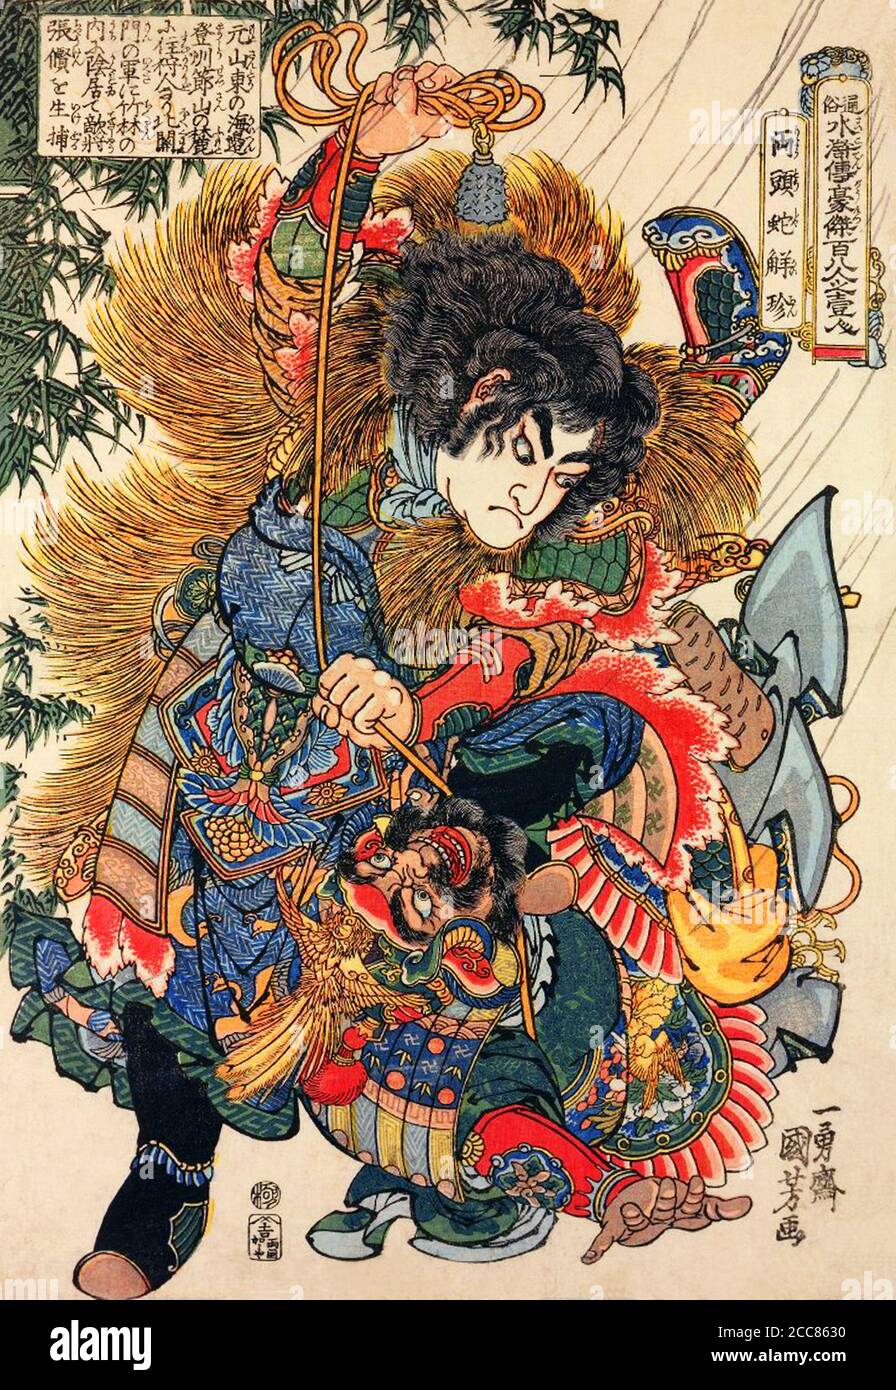 Japan: Der Jäger Xie Zhen oder Ryotoda Kaichin, einer der "Hundert und Acht Helden des Wasserrandes", in einem Strohhüpfen, der seinen Feind festbindet. Holzschnitt von Utagawa Kuniyoshi (1797-1863), 1827-1830. Der Wasserrand (im Chinesischen als Shuihu Zhuan bekannt, manchmal abgekürzt zu Shuihu, im Japanischen als Suikoden bekannt, sowie Outlaws des Marschs, Tale of the Marshes, All Men are Brothers, Men of the Marshes, Oder die Sümpfe des Mount Liang in Englisch, ist ein Roman aus dem 14. Jahrhundert und einer der vier großen klassischen Romane der chinesischen Literatur. Zugeschrieben Shi Nai'an und in Vernacula geschrieben Stockfoto